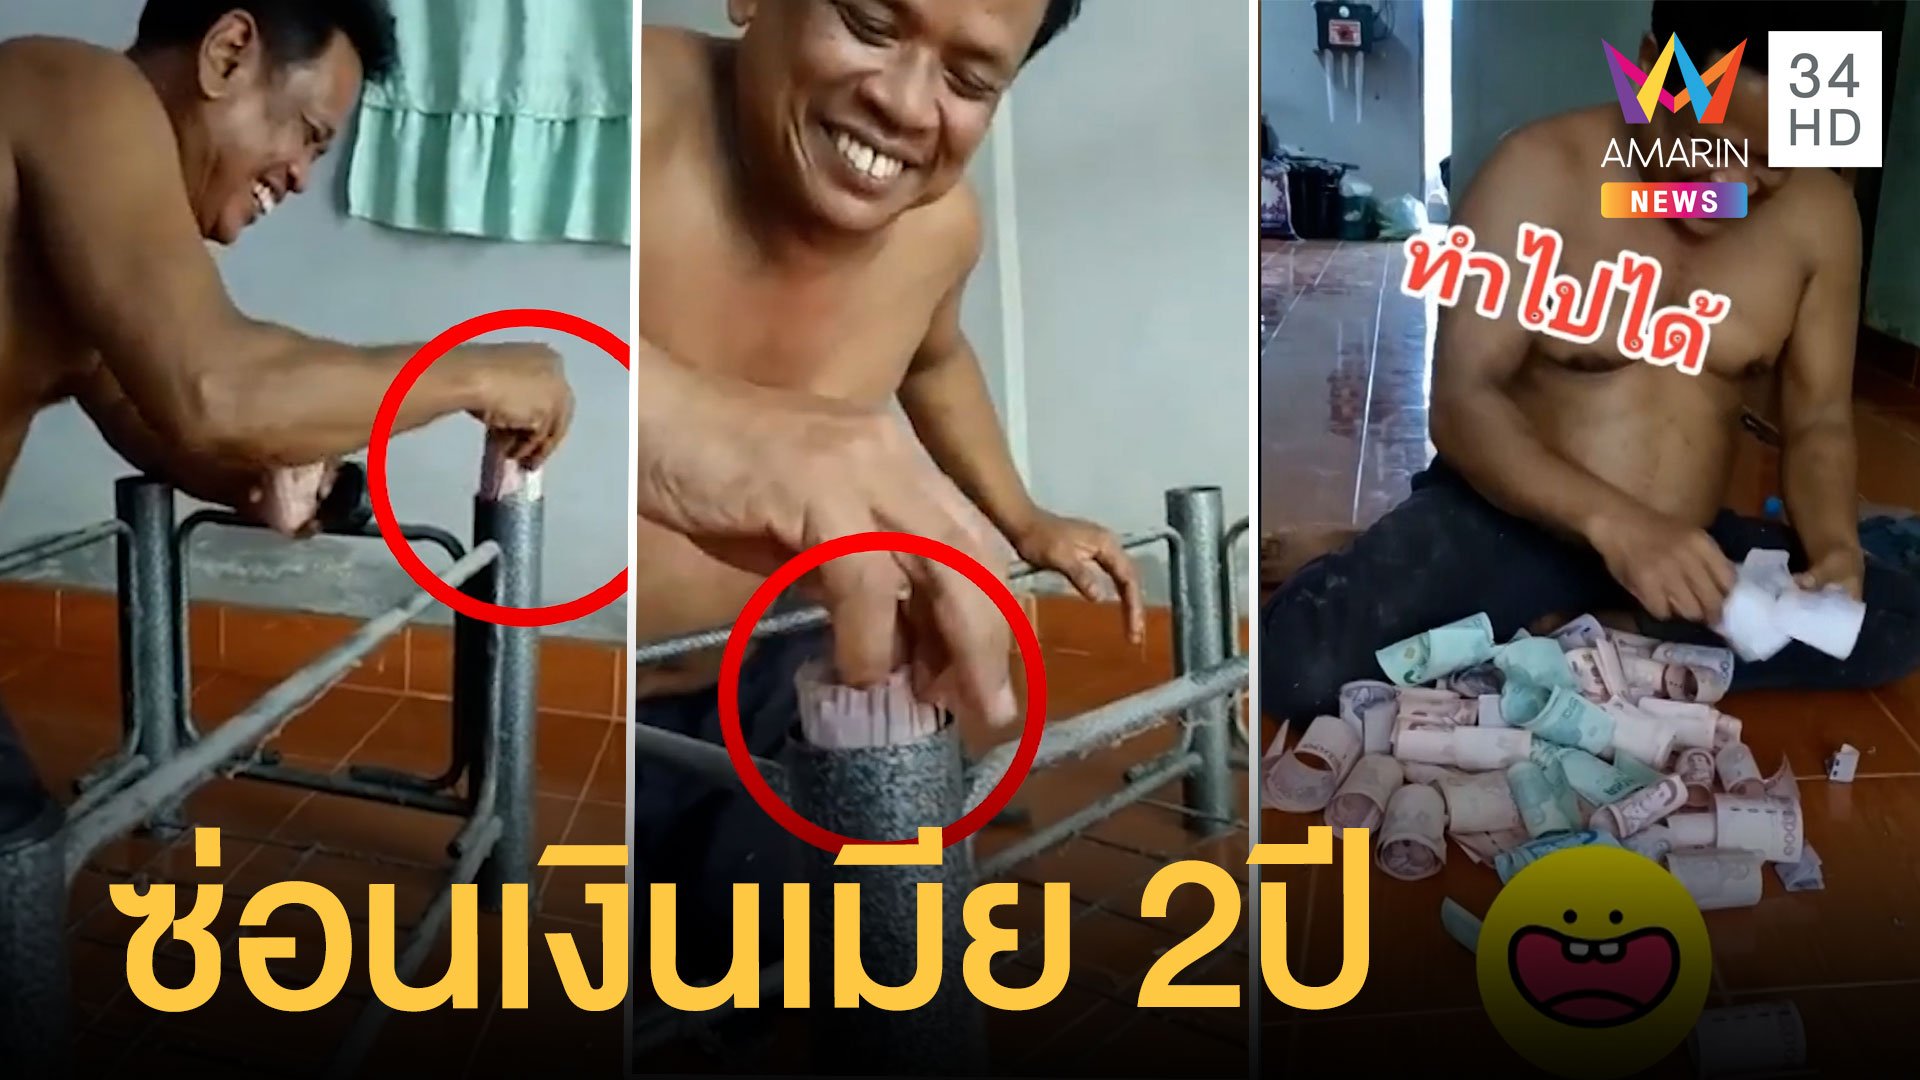 พ่อบ้านใจกล้า ซ่อนเงินเมียใต้ขาโต๊ะ 2 ปี ได้ 60,000 บาท | ข่าวเที่ยงอมรินทร์ | 5 เม.ย. 65 | AMARIN TVHD34